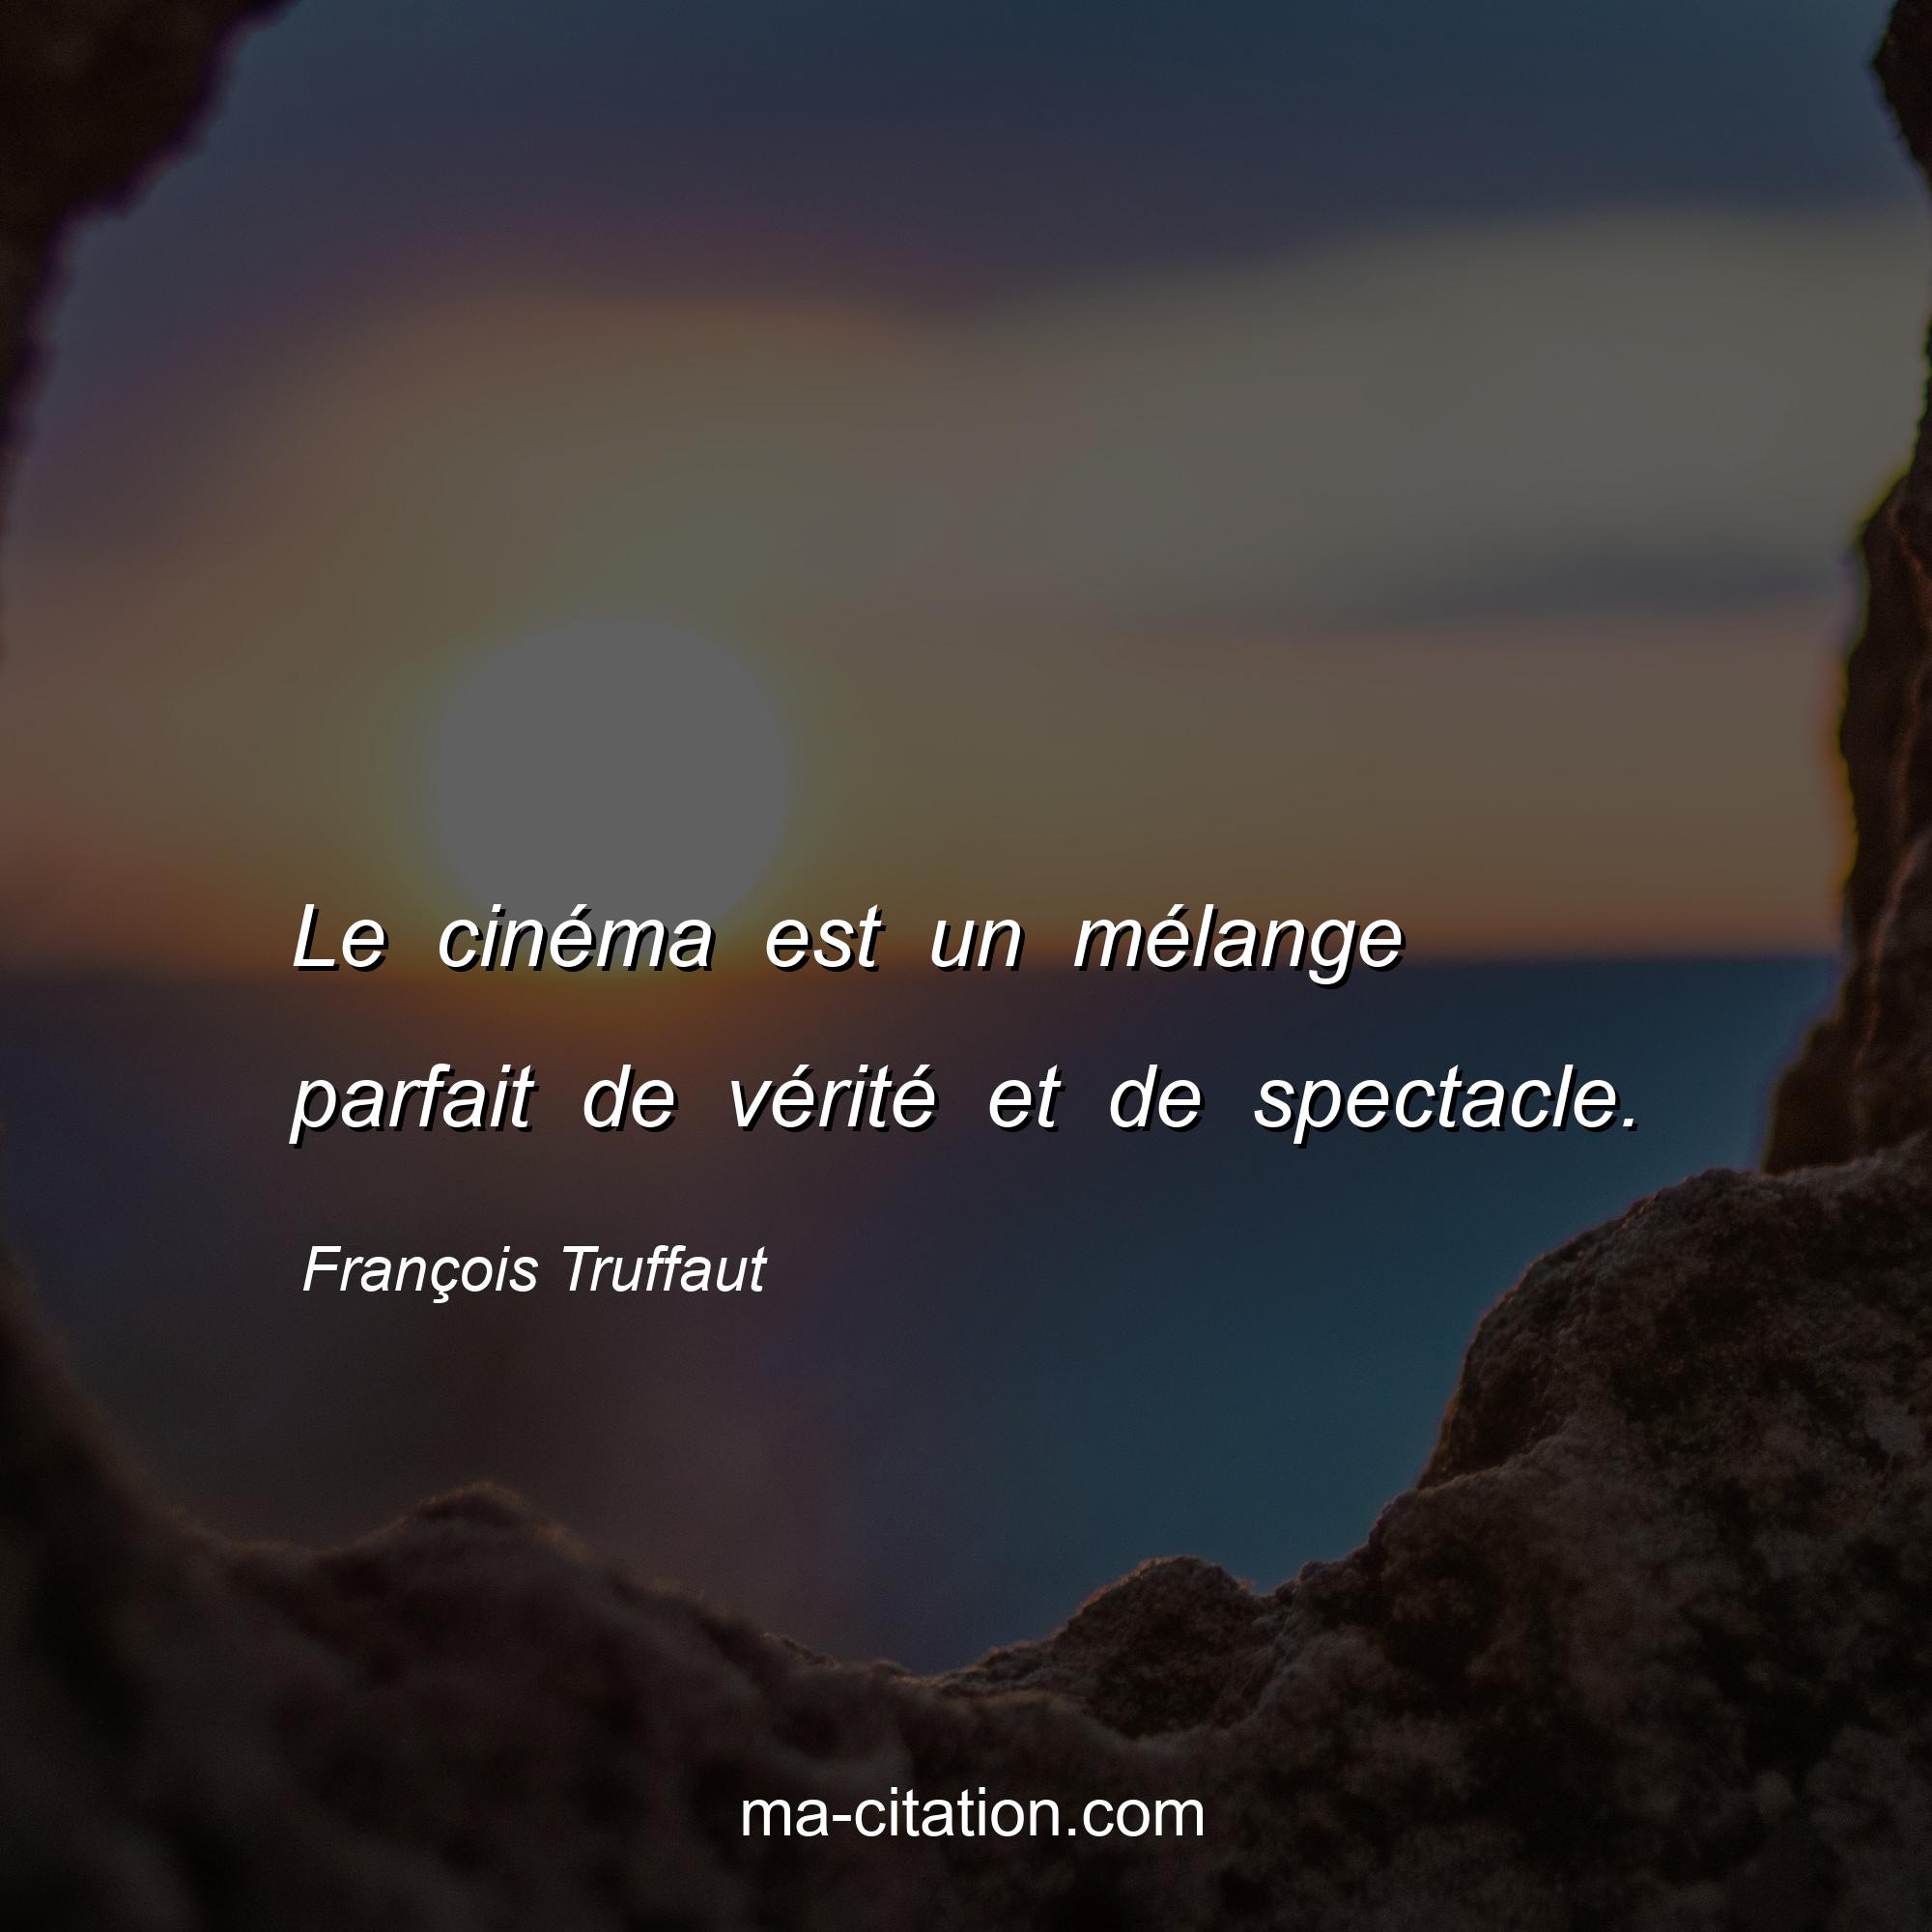 François Truffaut : Le cinéma est un mélange parfait de vérité et de spectacle.